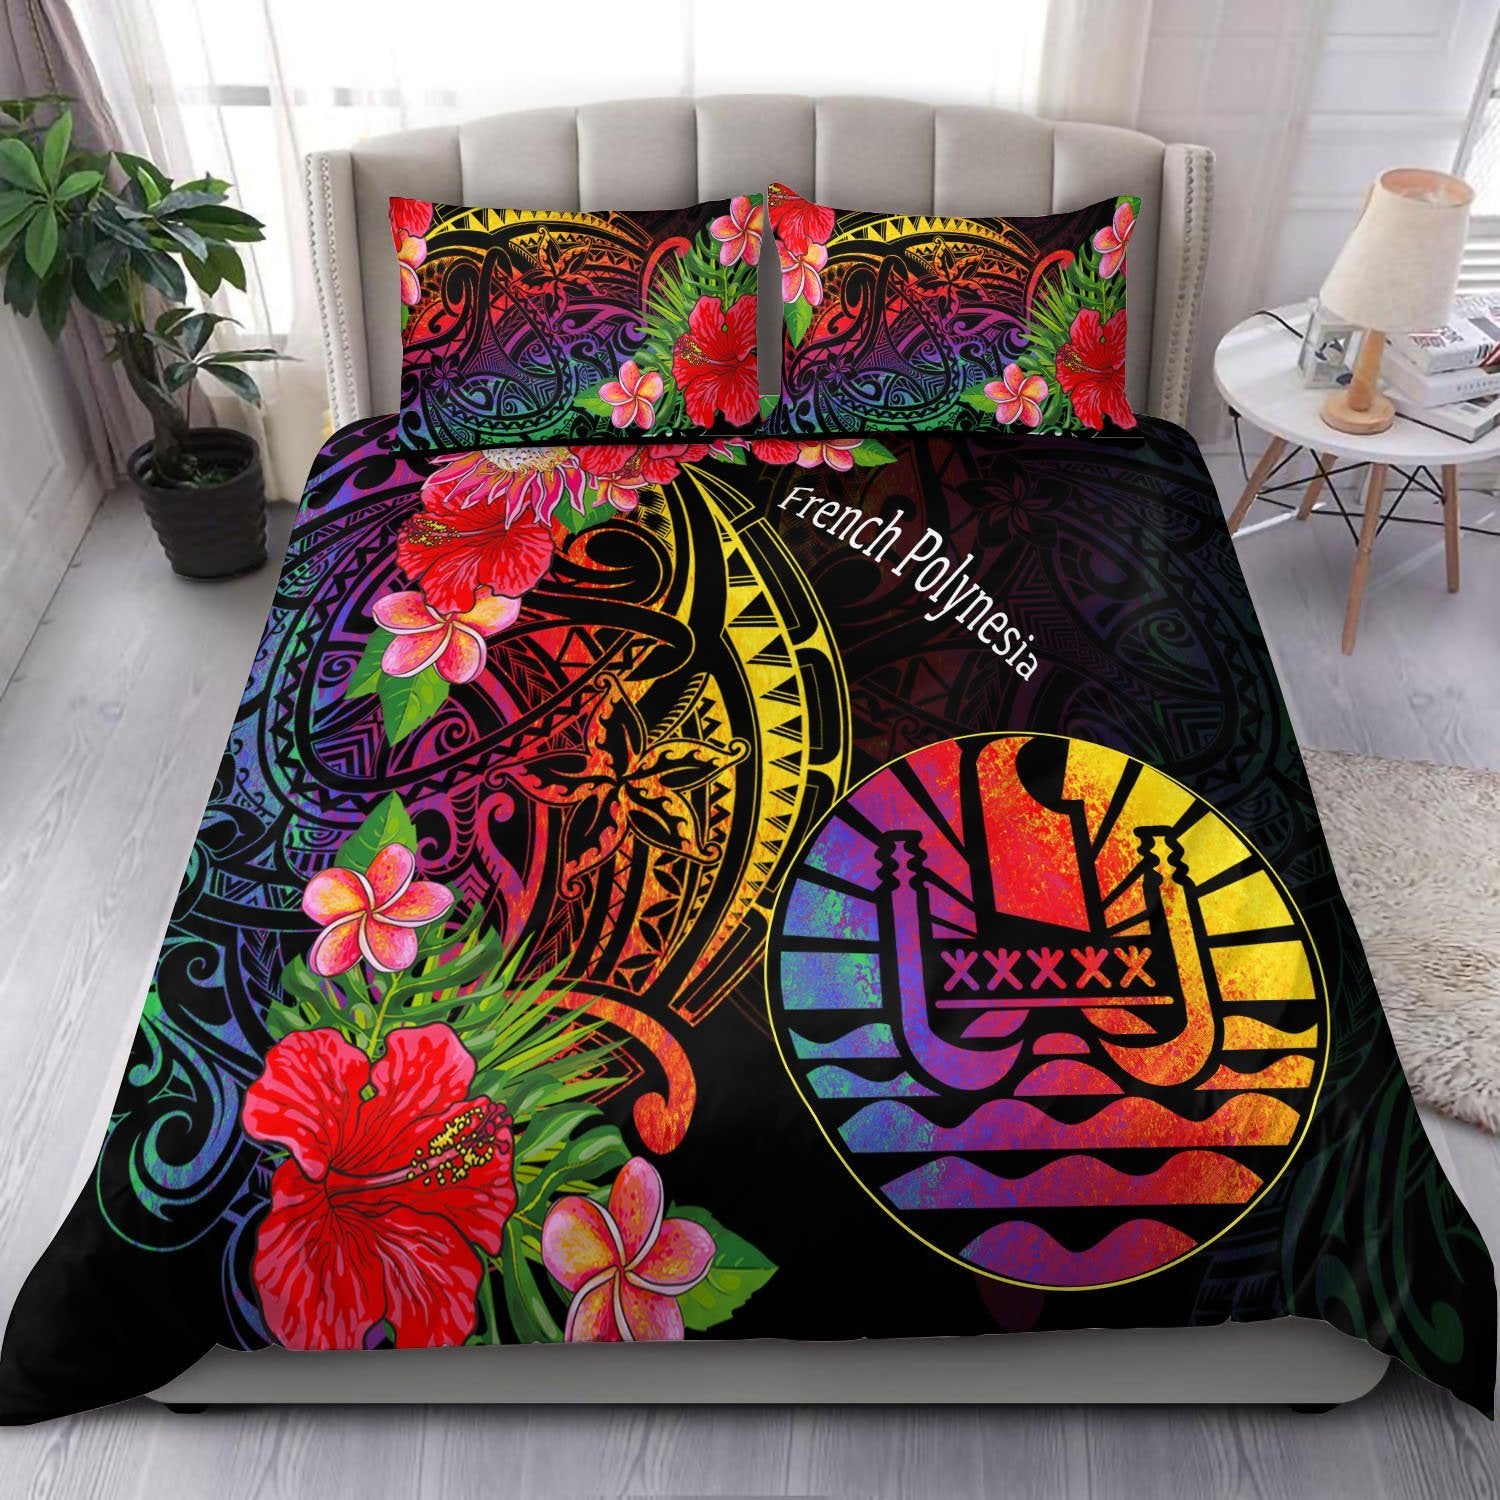 french-polynesia-bedding-set-tropical-hippie-style